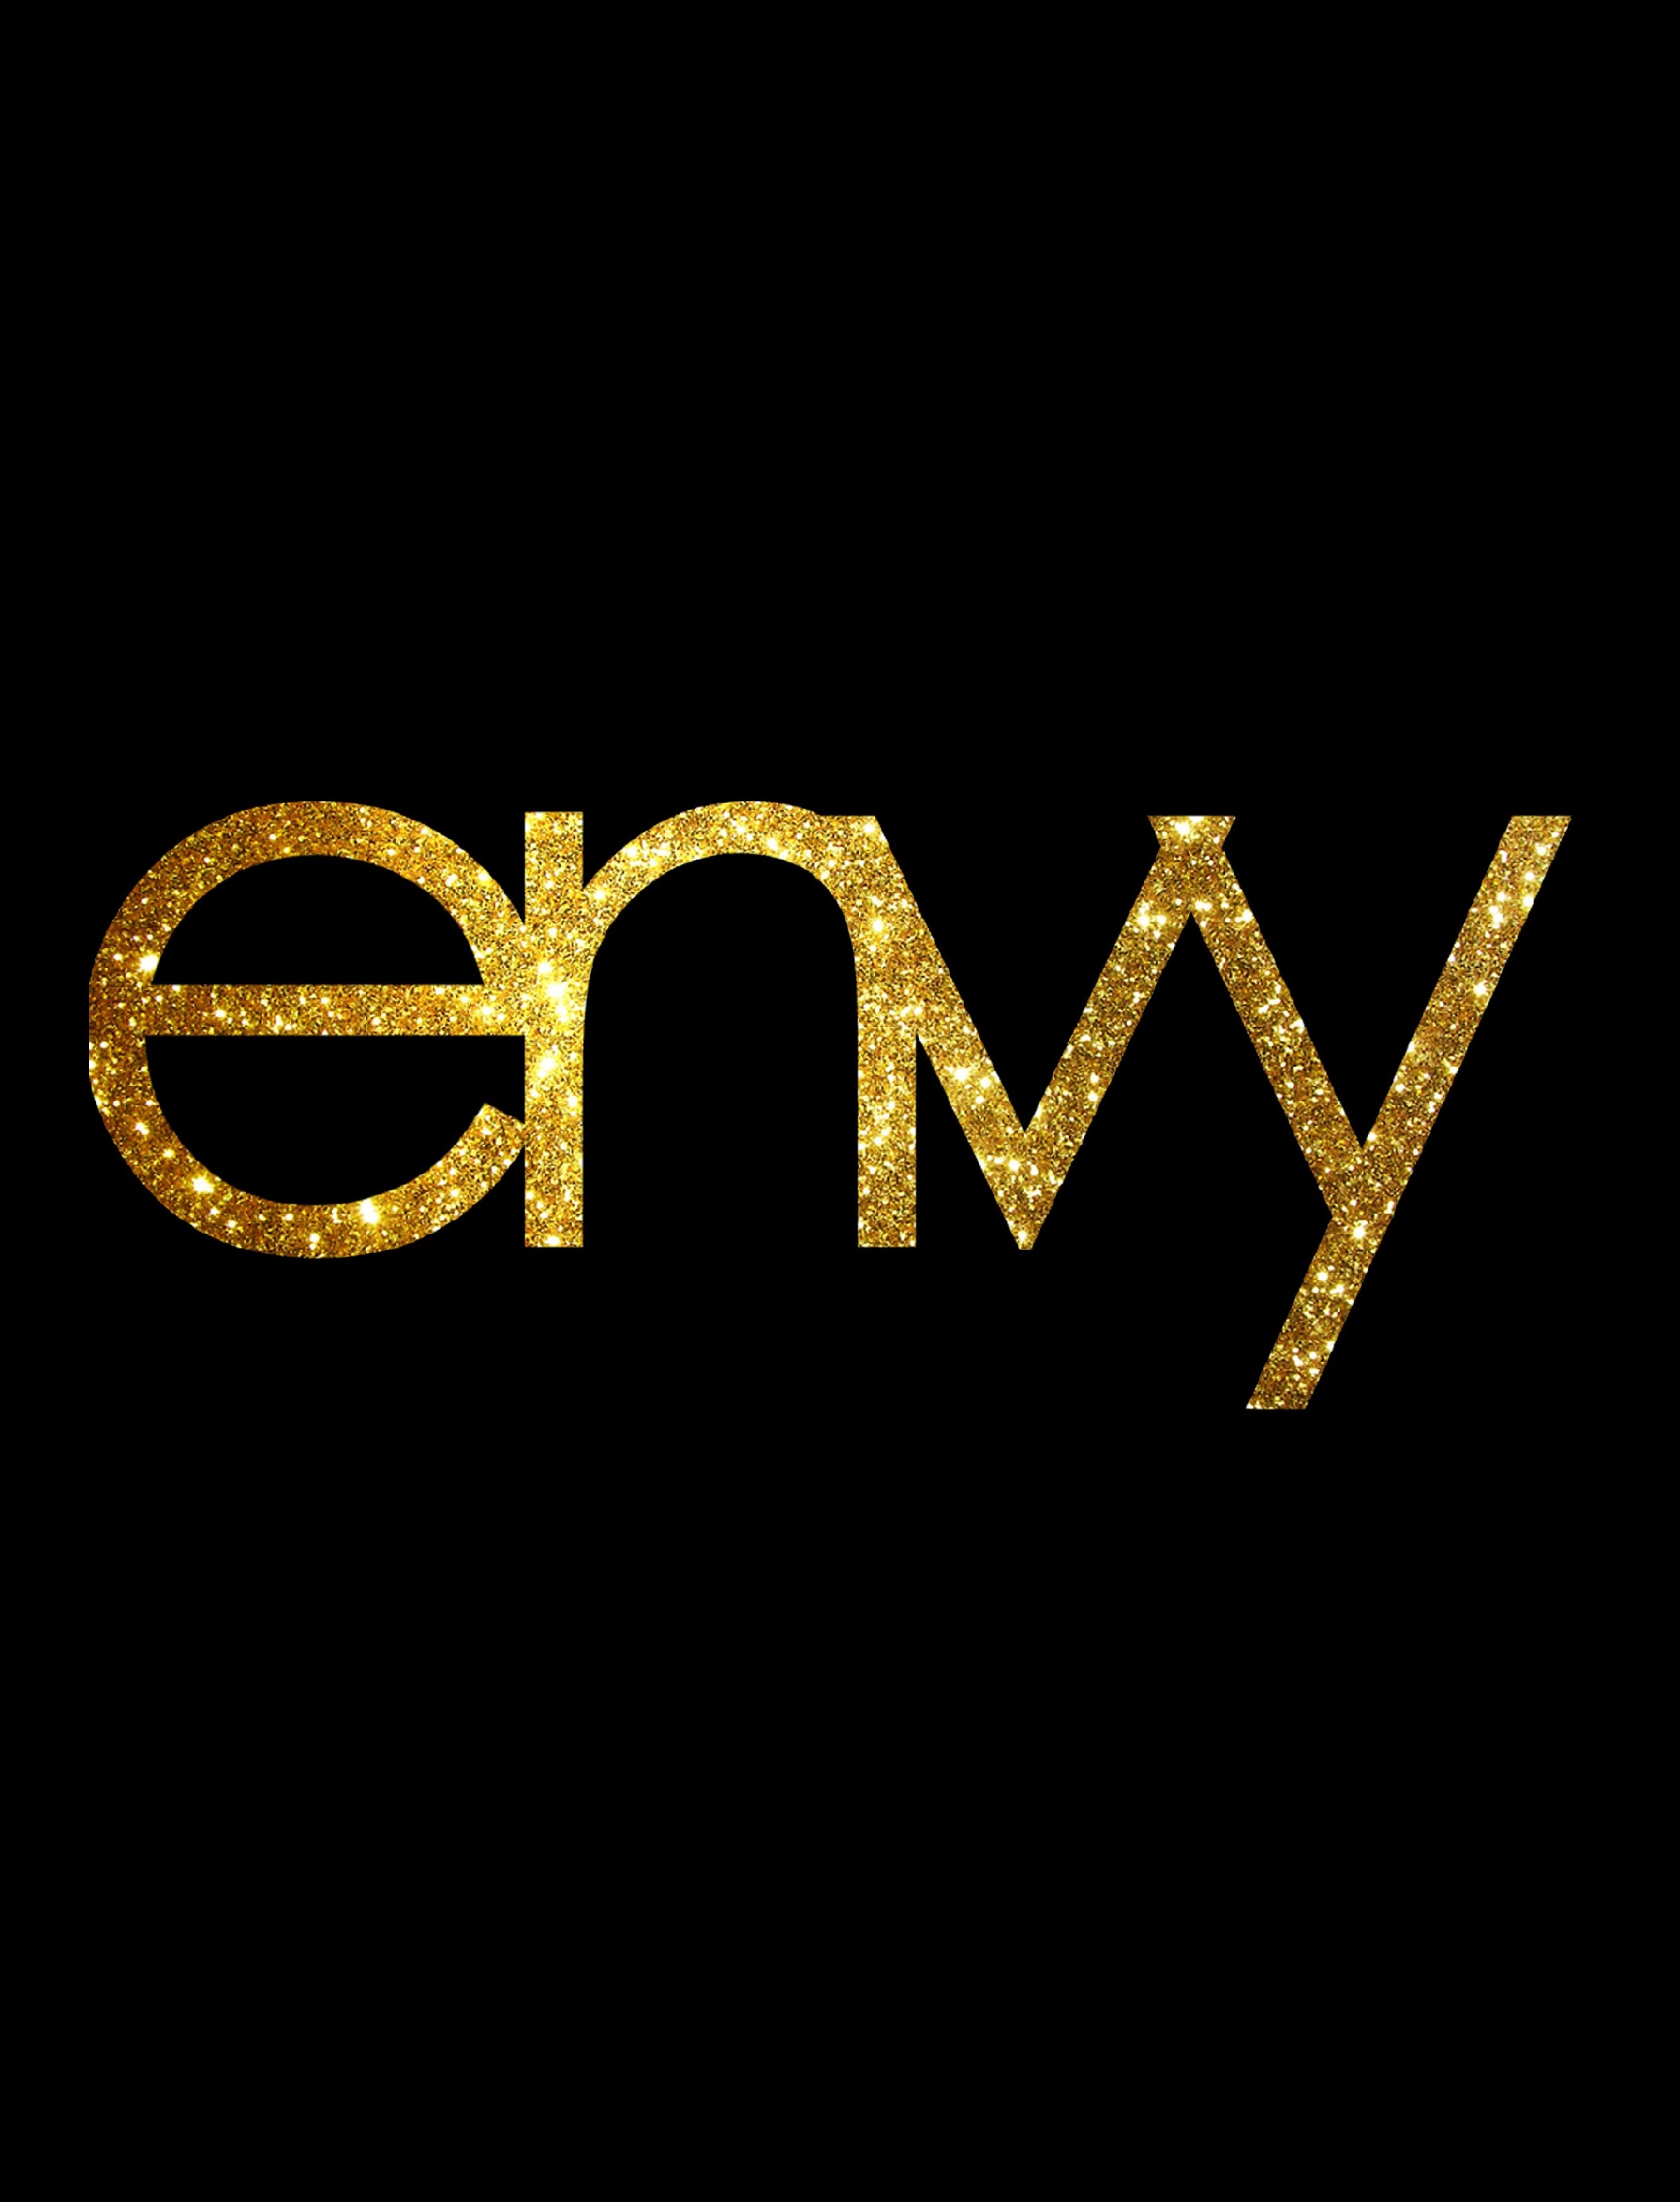 The Envy Agency